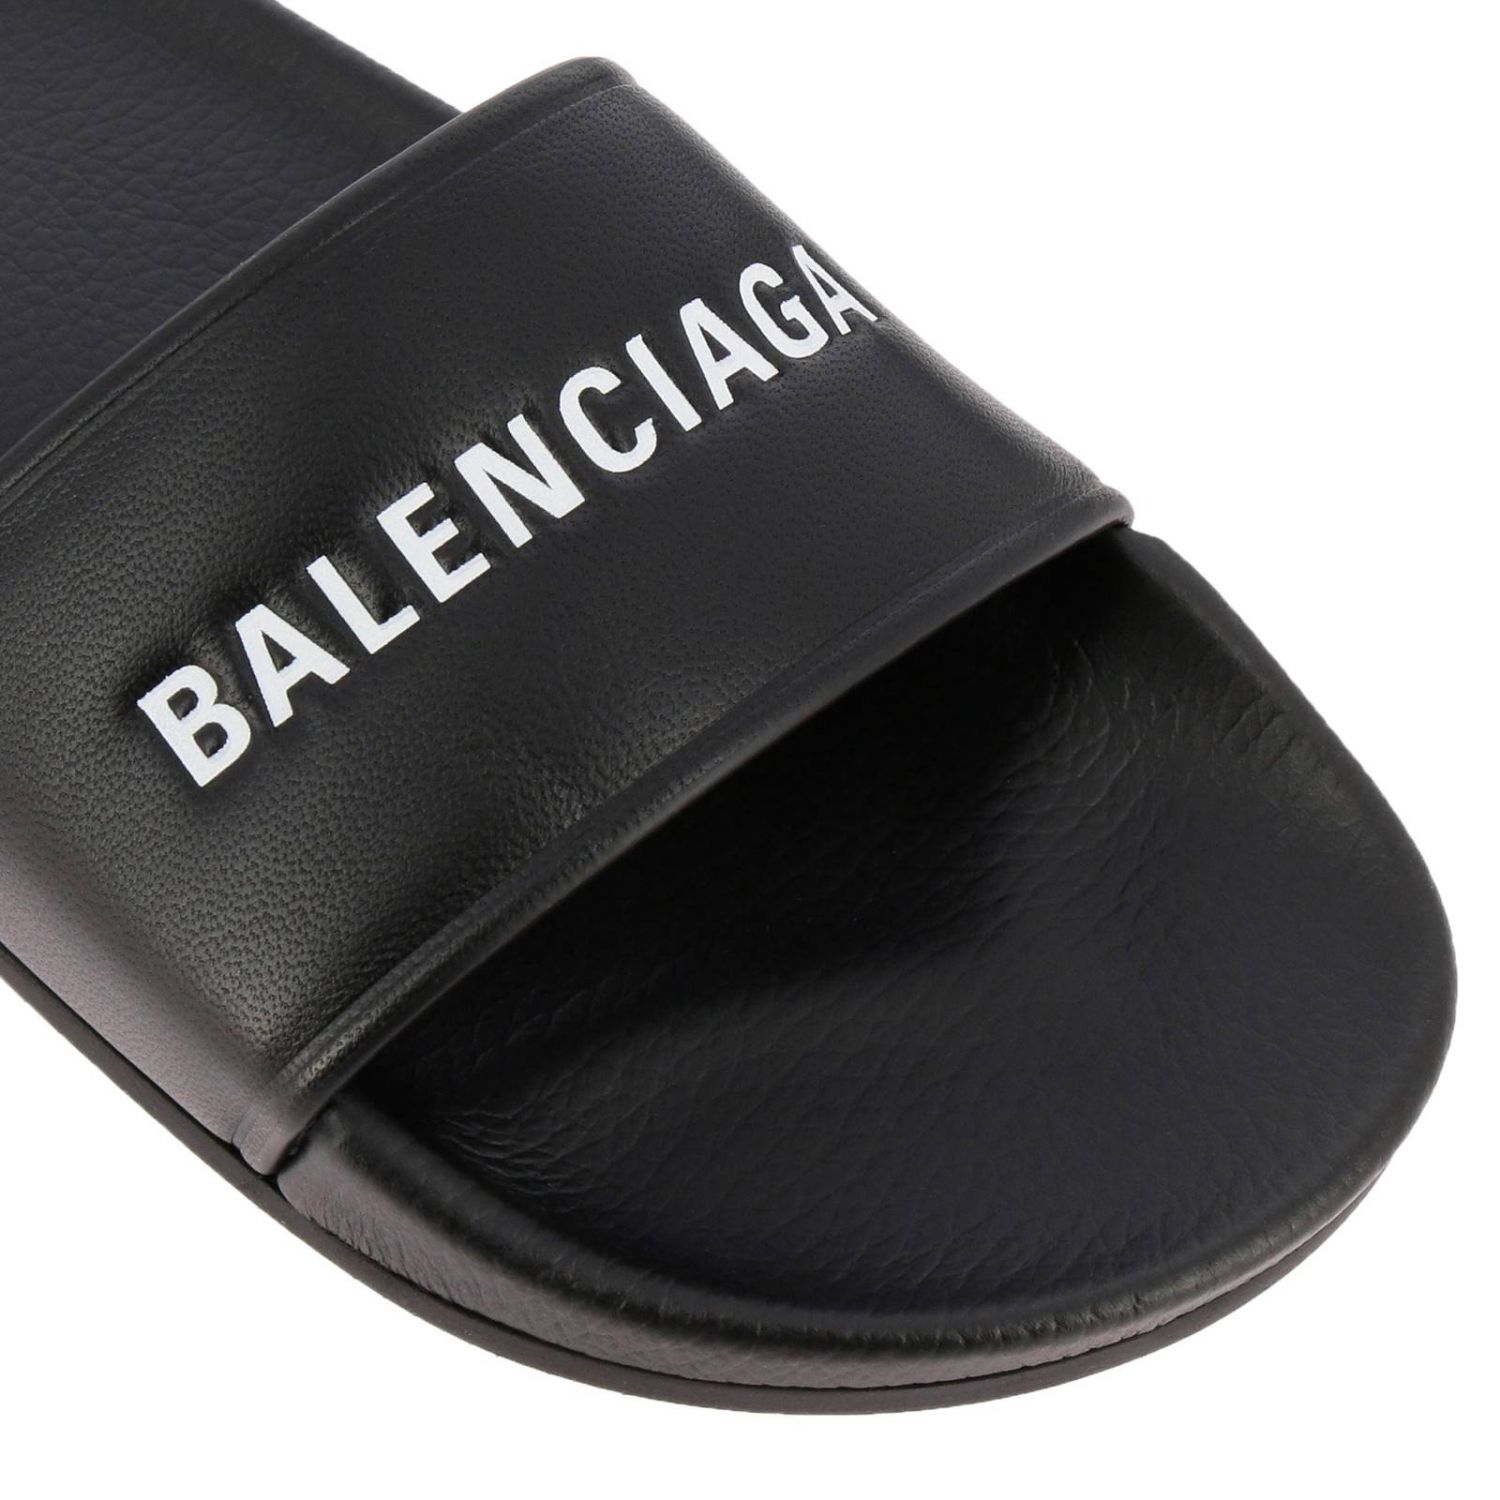 Flat sandals Balenciaga: Shoes women Balenciaga black 3